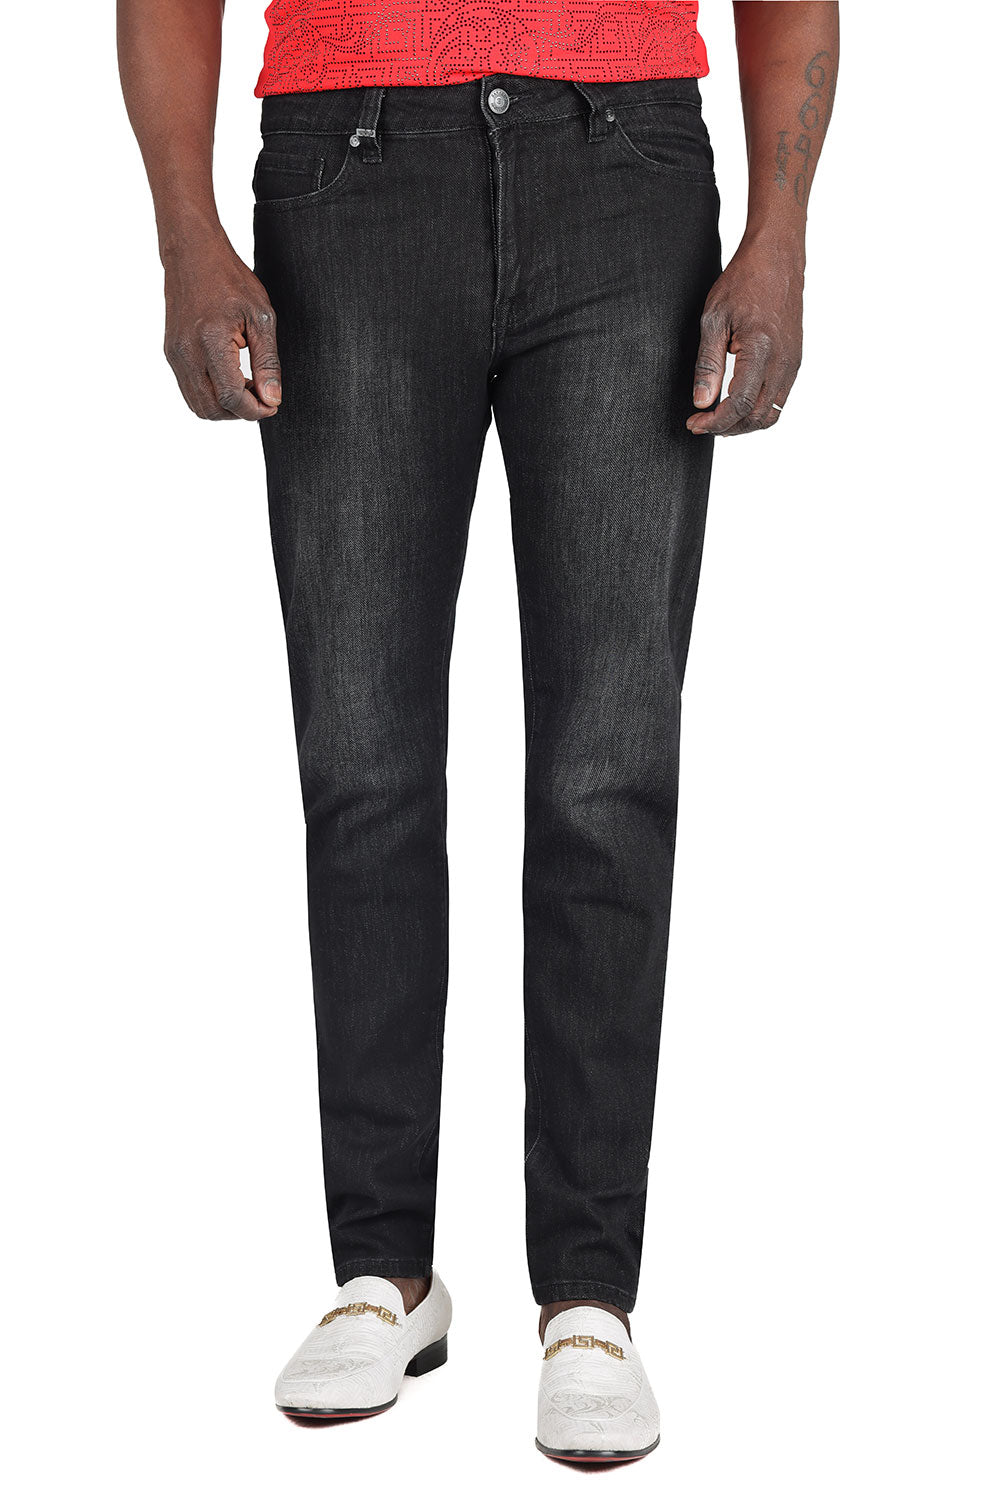 Barabas Men's Washed Black Premium Denim Jeans 2JE01SL Black